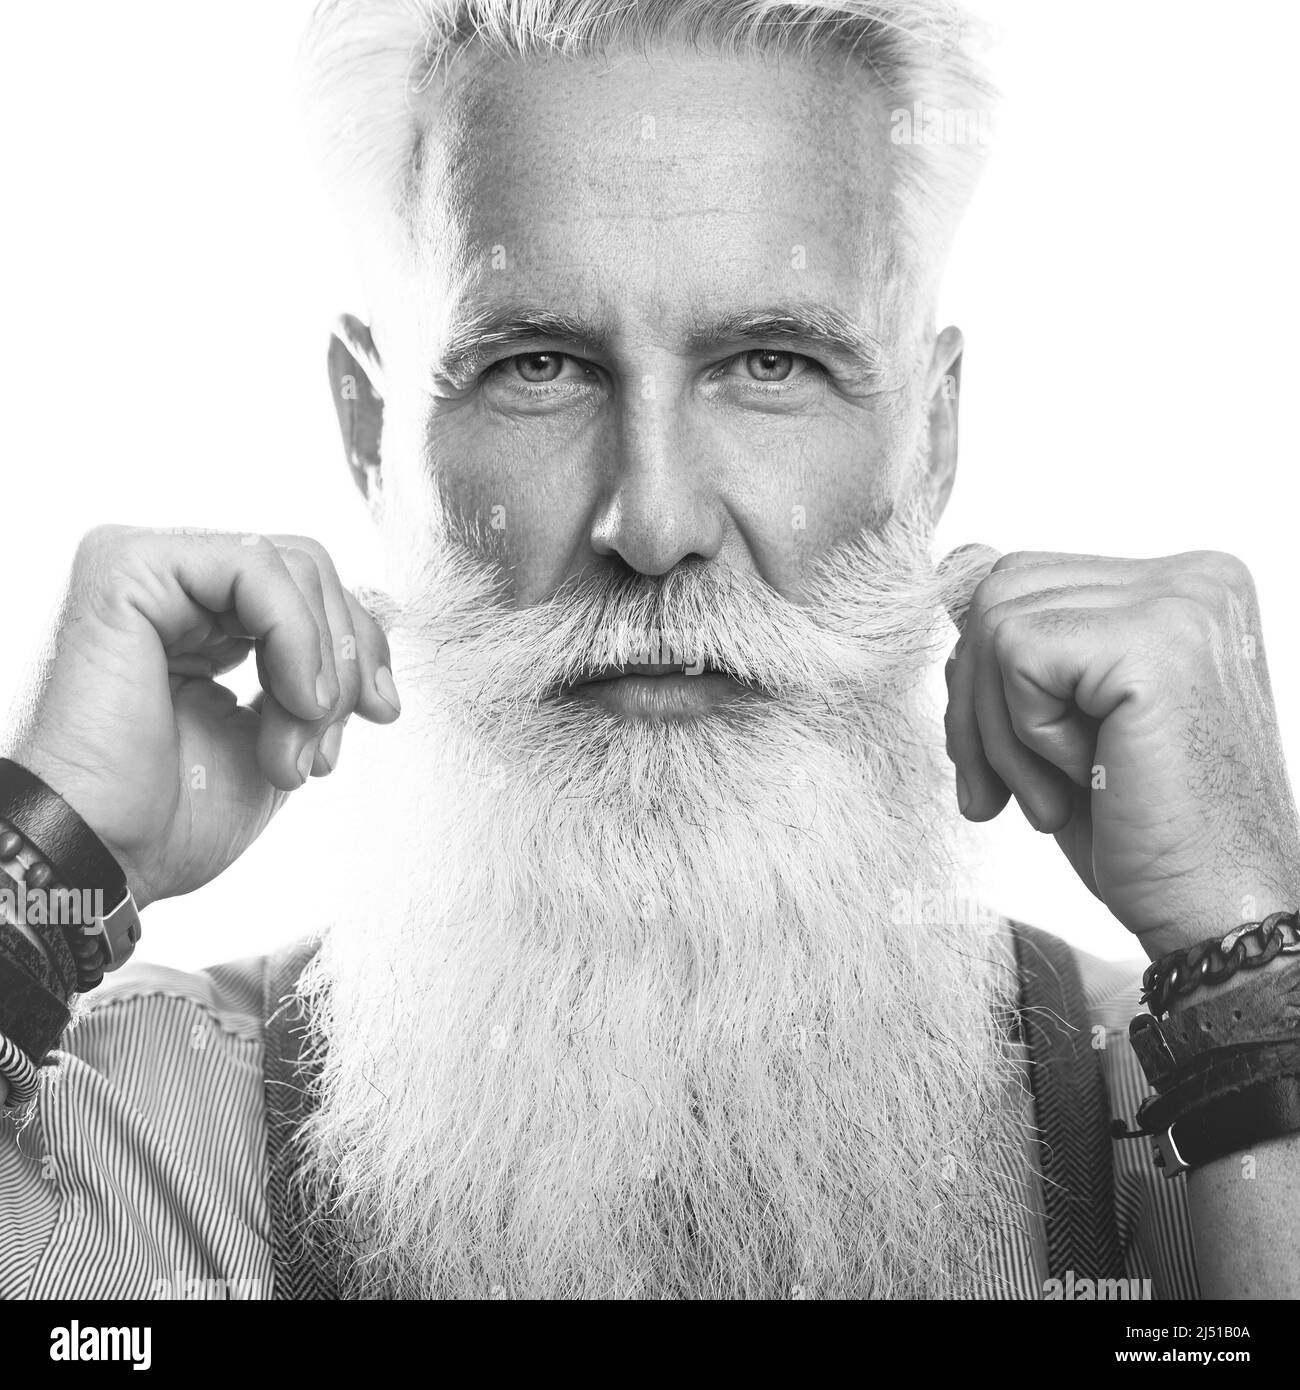 Stylish and handsome bearded senior man on white background Stock Photo